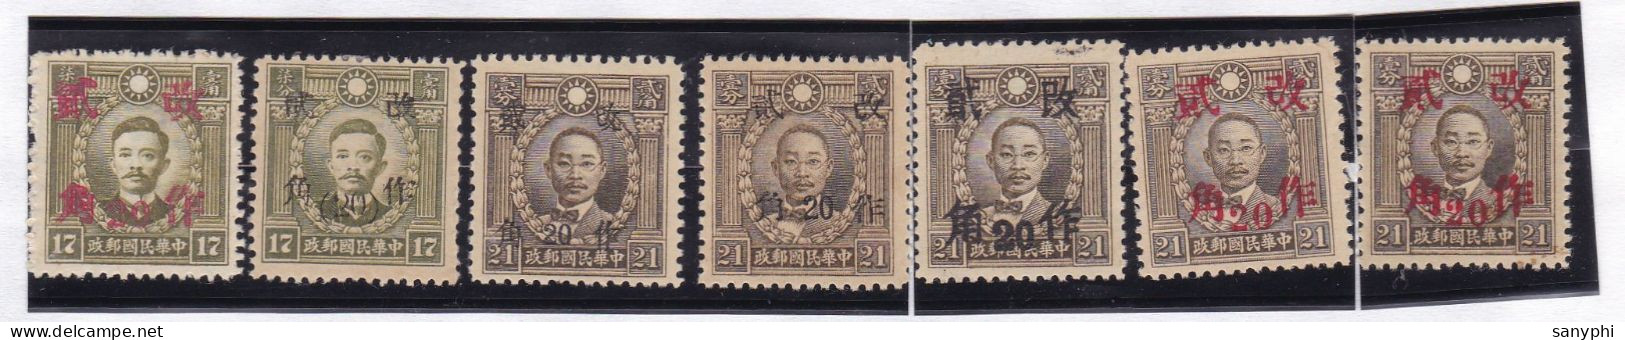 China Republic Dr Sun Ovpt Various Provinces Unused Stamps - 1912-1949 República